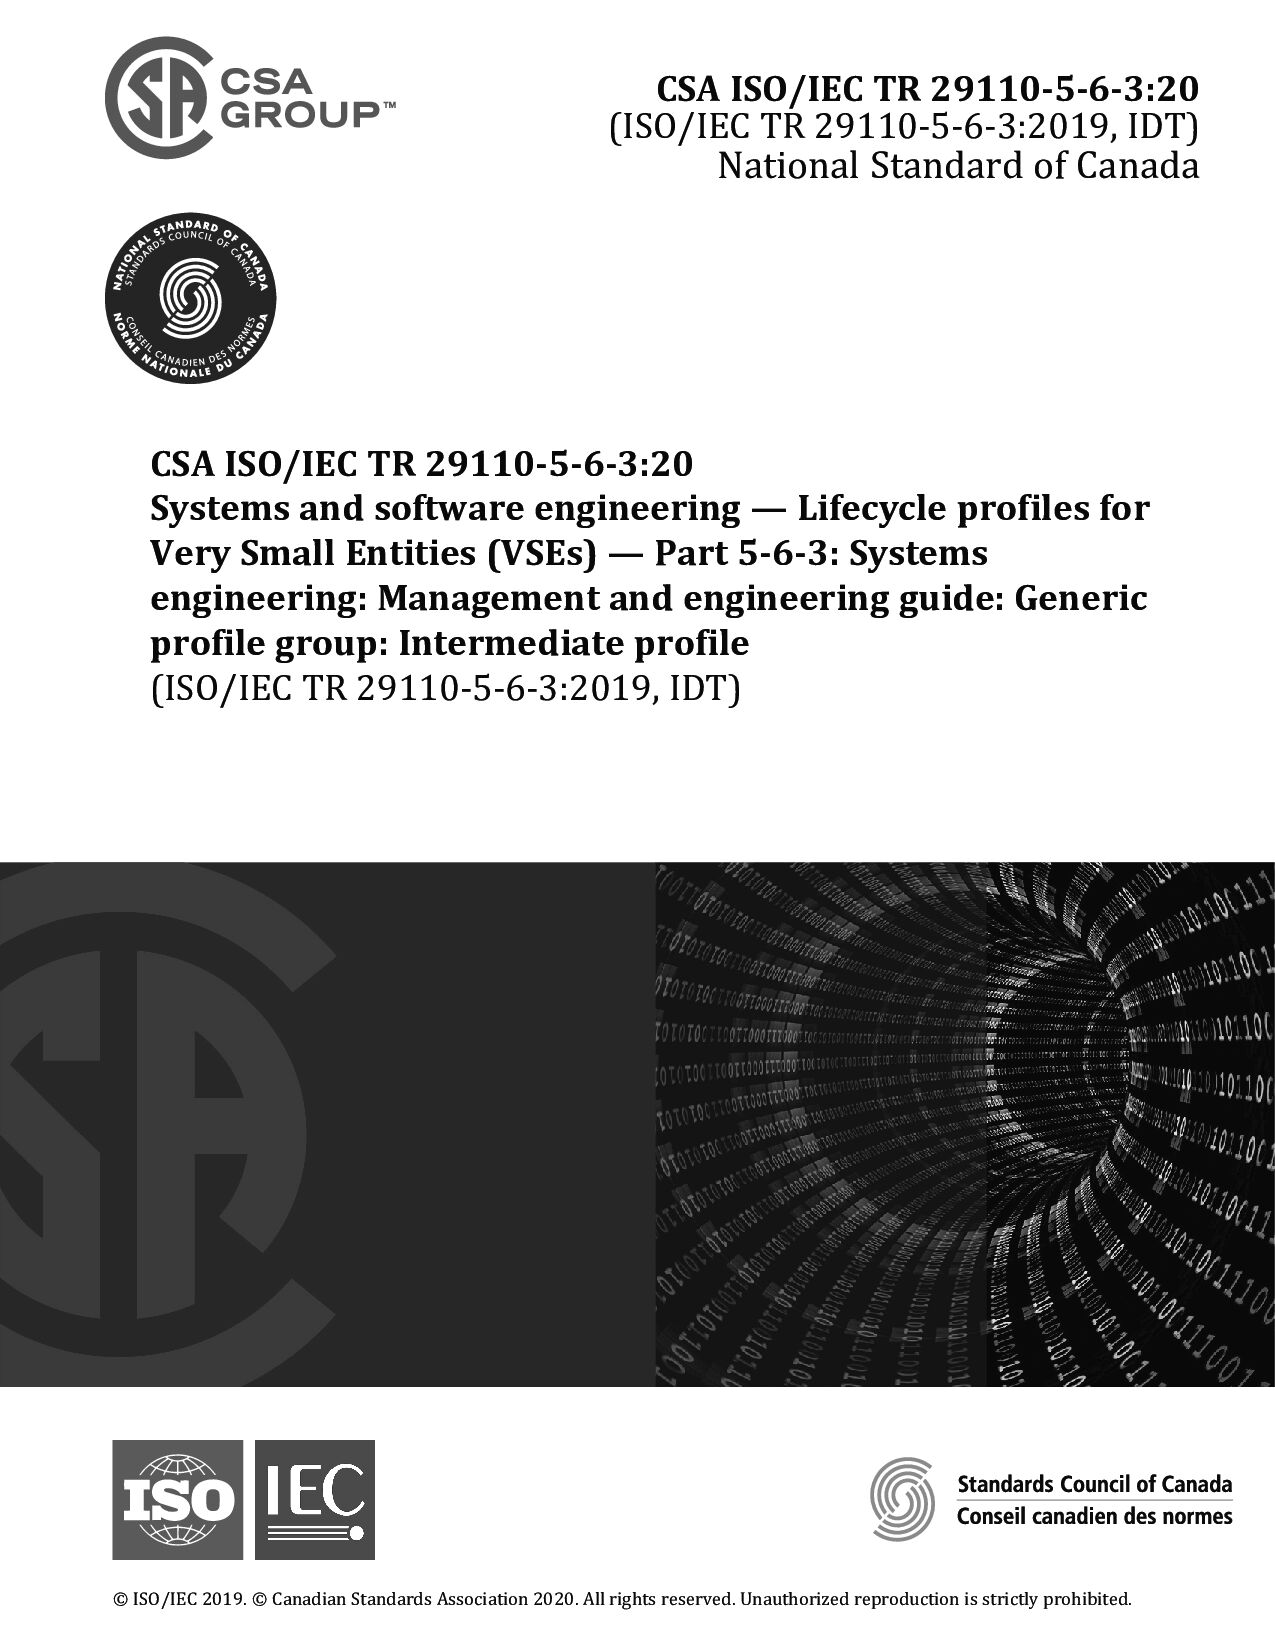 CSA ISO/IEC TR 29110-5-6-3:2020封面图